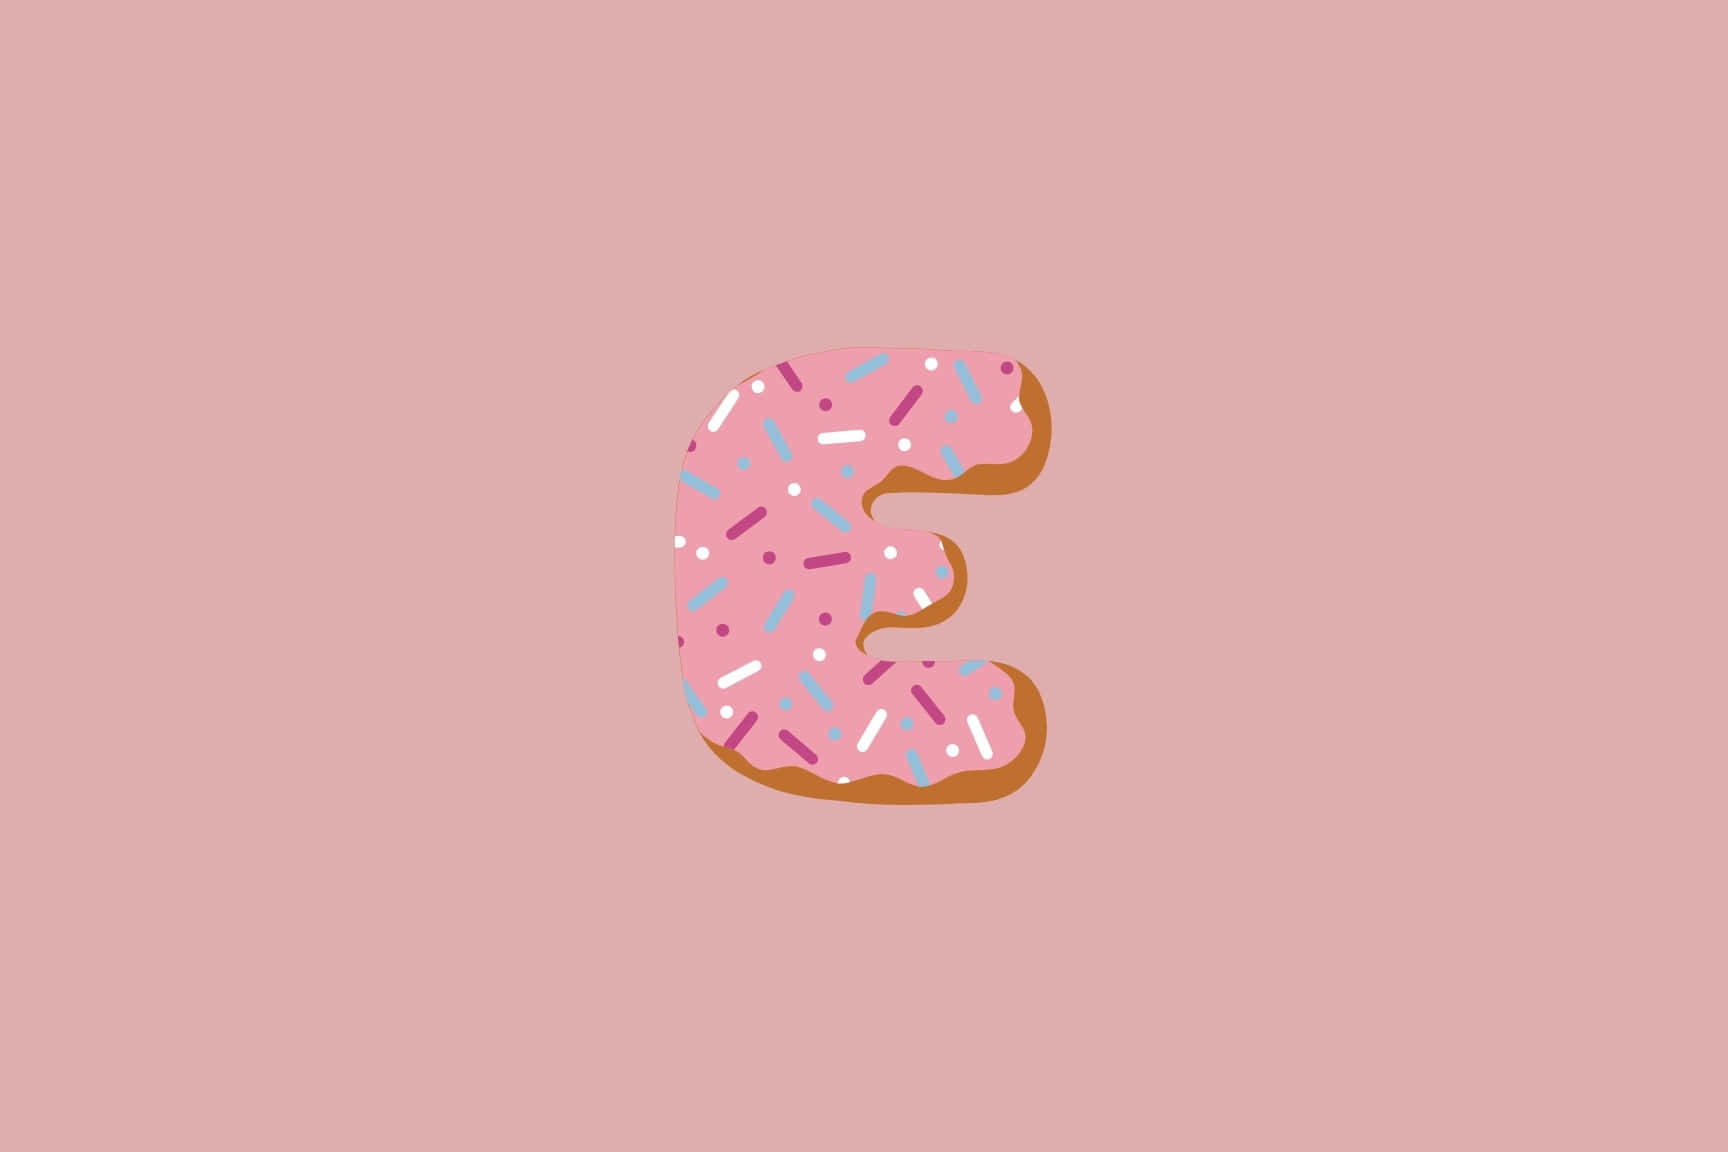 Frosted Donut Letter E Illustration Wallpaper